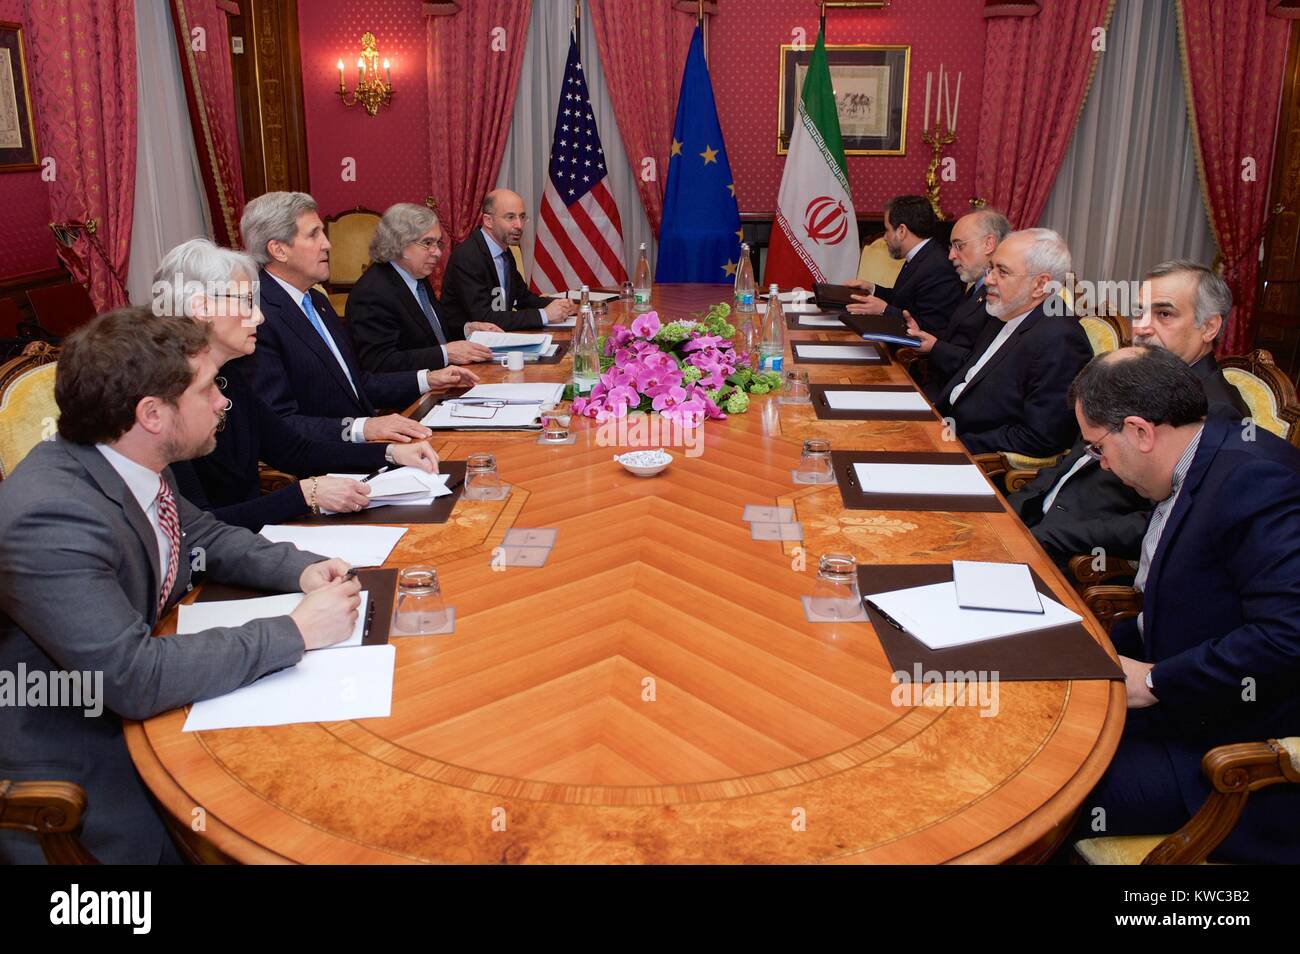 Le ministre iranien des affaires étrangères Zarif et les représentants des États- Unis dans les négociations du programme nucléaire iranien. Lausanne, Suisse, le 29 mars 2015. Le côté gauche du tableau : Jon Finer, Wendy Sherman, John Kerry, Ernest Moniz, Robert Malley. Sur la droite sont le Ministre iranien des affaires étrangères Javad Zarif (centre), et M. Ali Akbar Salehi (sur la droite), Zarif, le Vice-président de l'Iran pour l'énergie atomique avec leurs conseillers. (BSLOC___2015 13 286) Banque D'Images